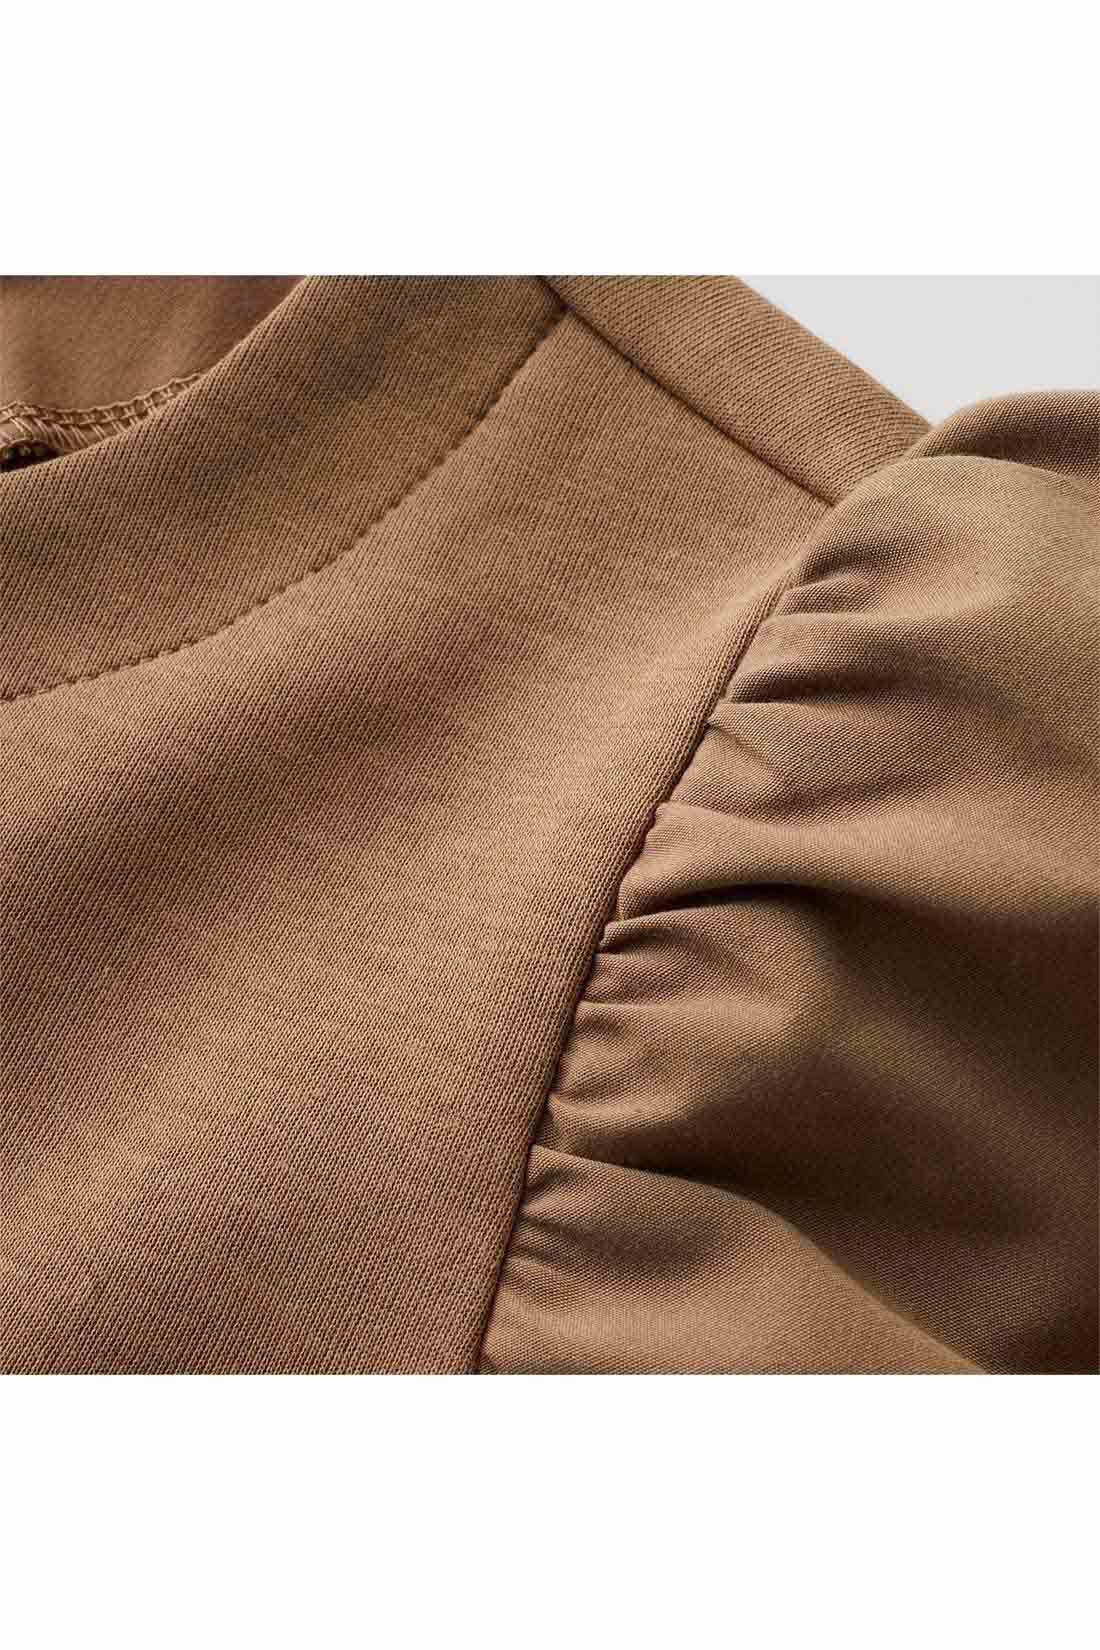 IEDIT[イディット]　ふんわり袖デザインが華やかな 異素材切り替えプルオーバー〈ブラック〉|袖は張り感のある布はく素材で軽やかに。身ごろはほどよく厚みがあり表面感のきれいなカットソー素材。 ※お届けするカラーとは異なります。